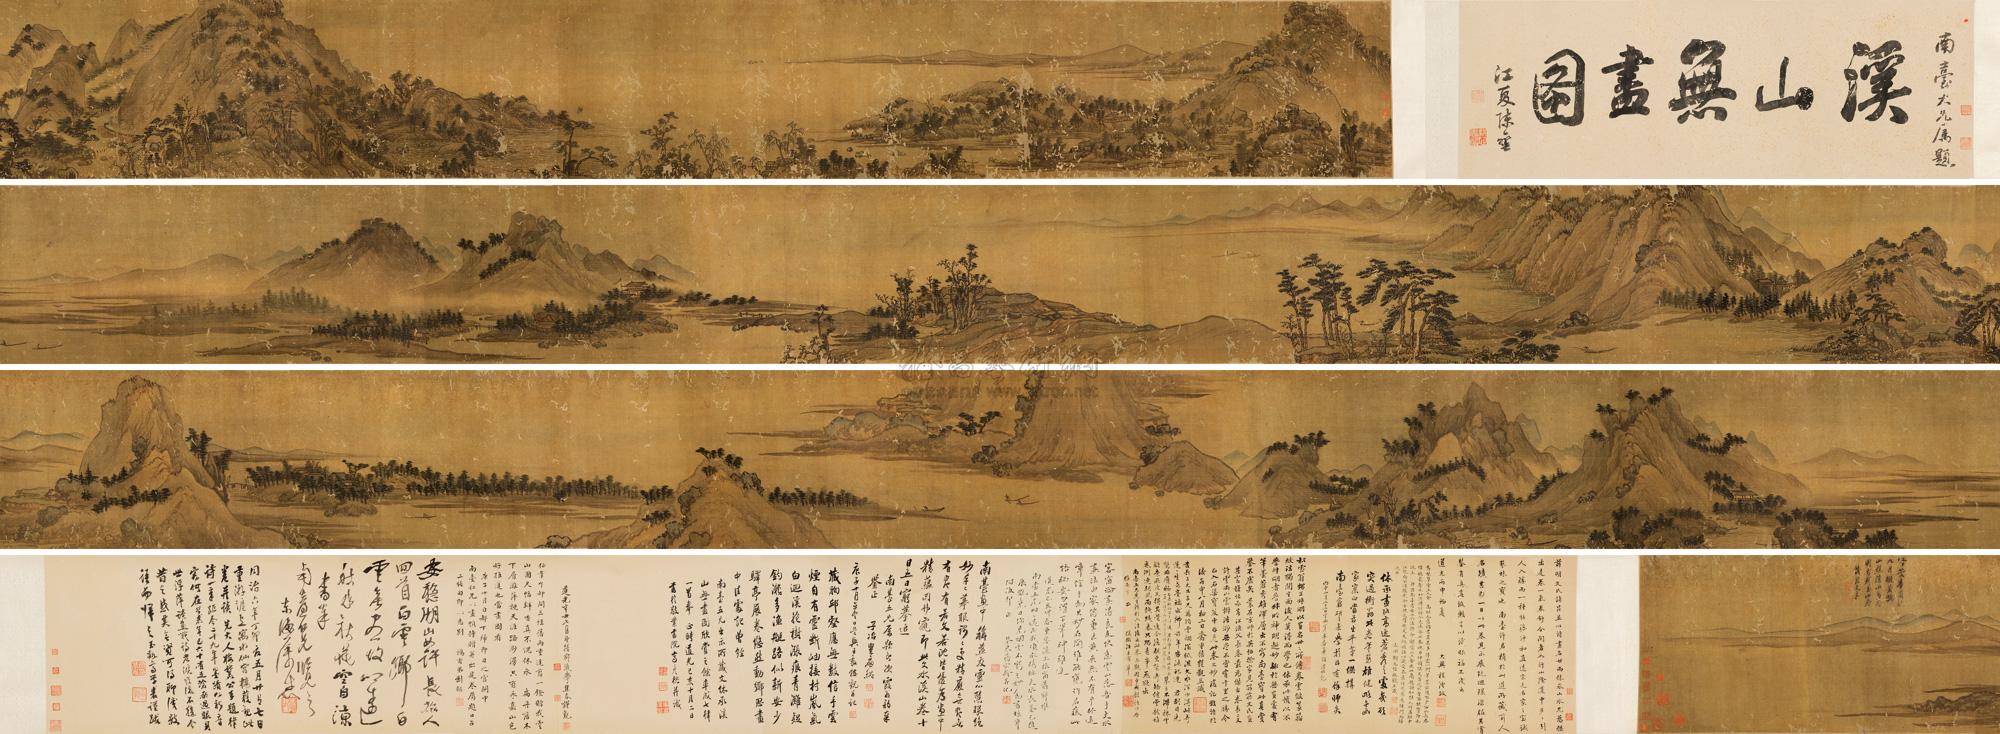 拍卖首页 北京保利国际拍卖有限公司 2012秋季拍卖会 中国古代书画